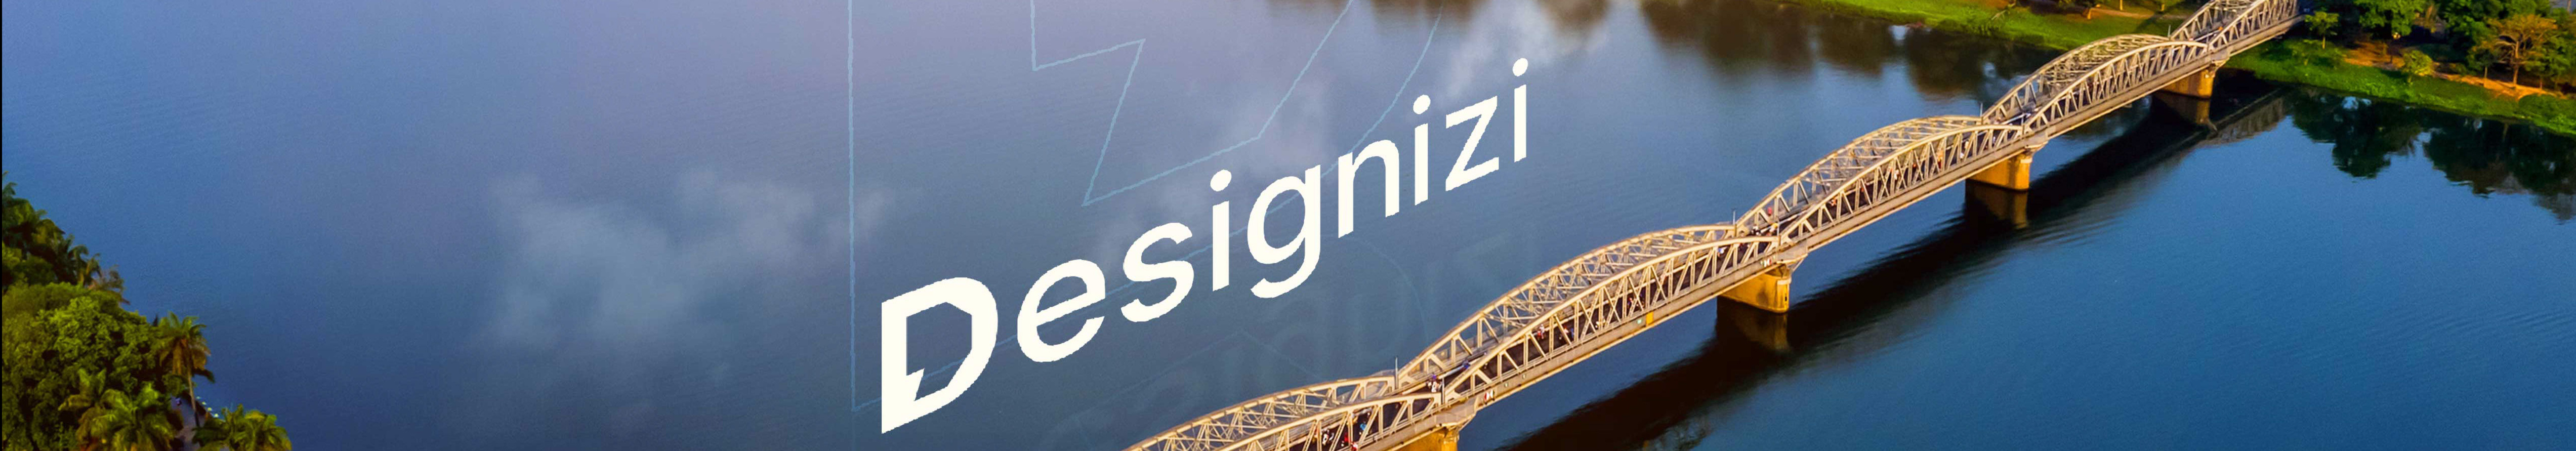 DesigniZi Creative Agency's profile banner